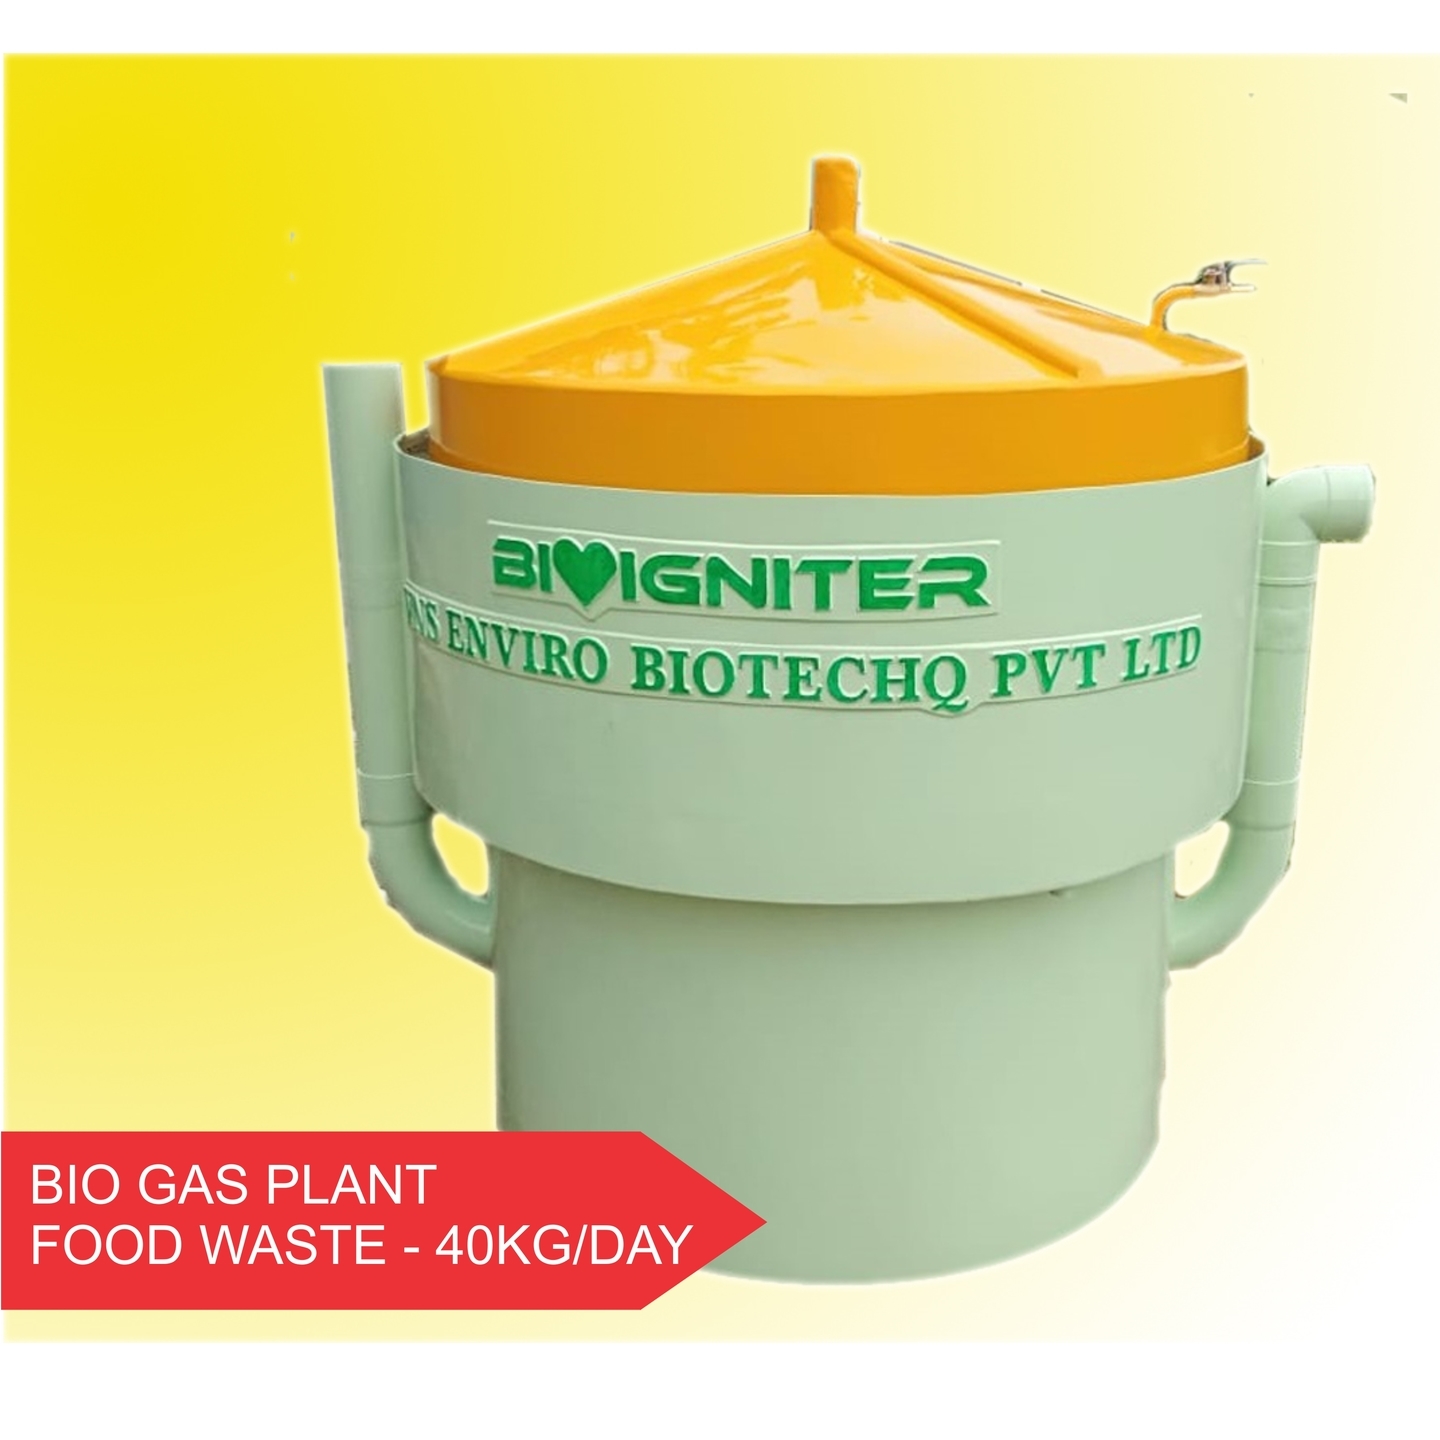 Bioigniter - 40KGDay Food Waste